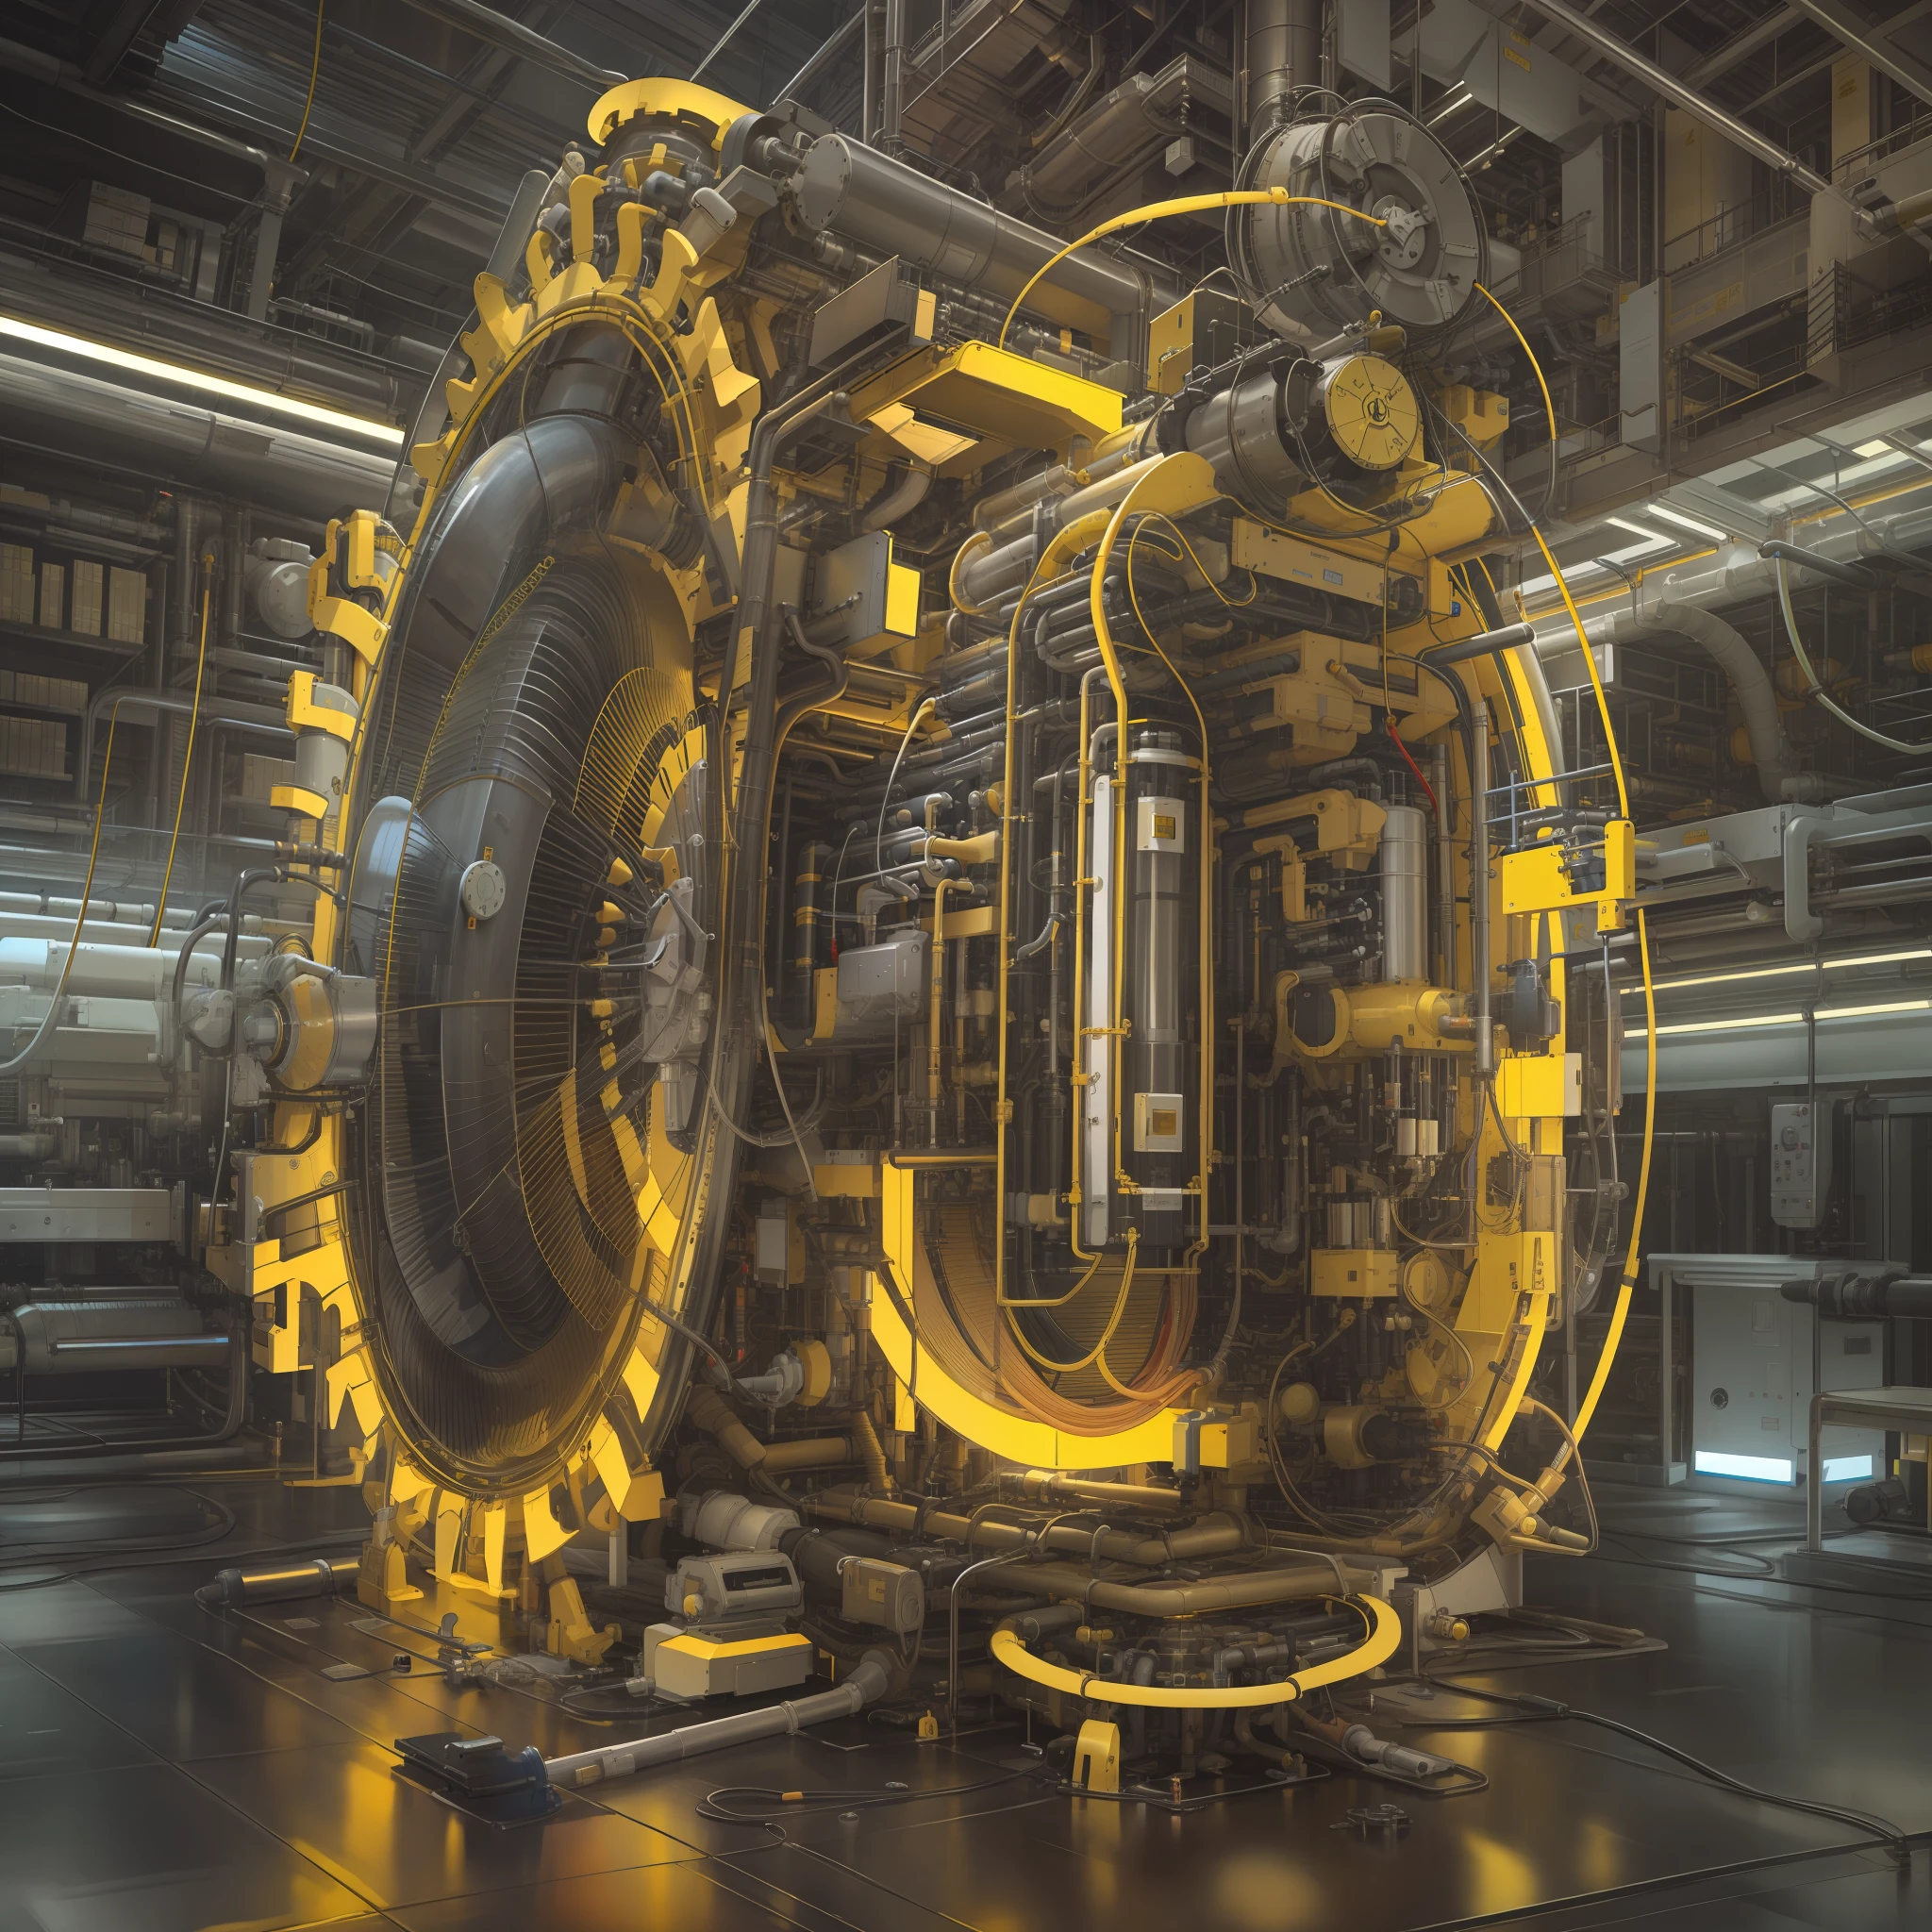 Hacer un generador de partículas tubular, extremadamente detallado, ultra detallado, Moderno y tecnológicamente avanzado. colores vibrantes, Rayos amarillos una máquina del tiempo futurista.